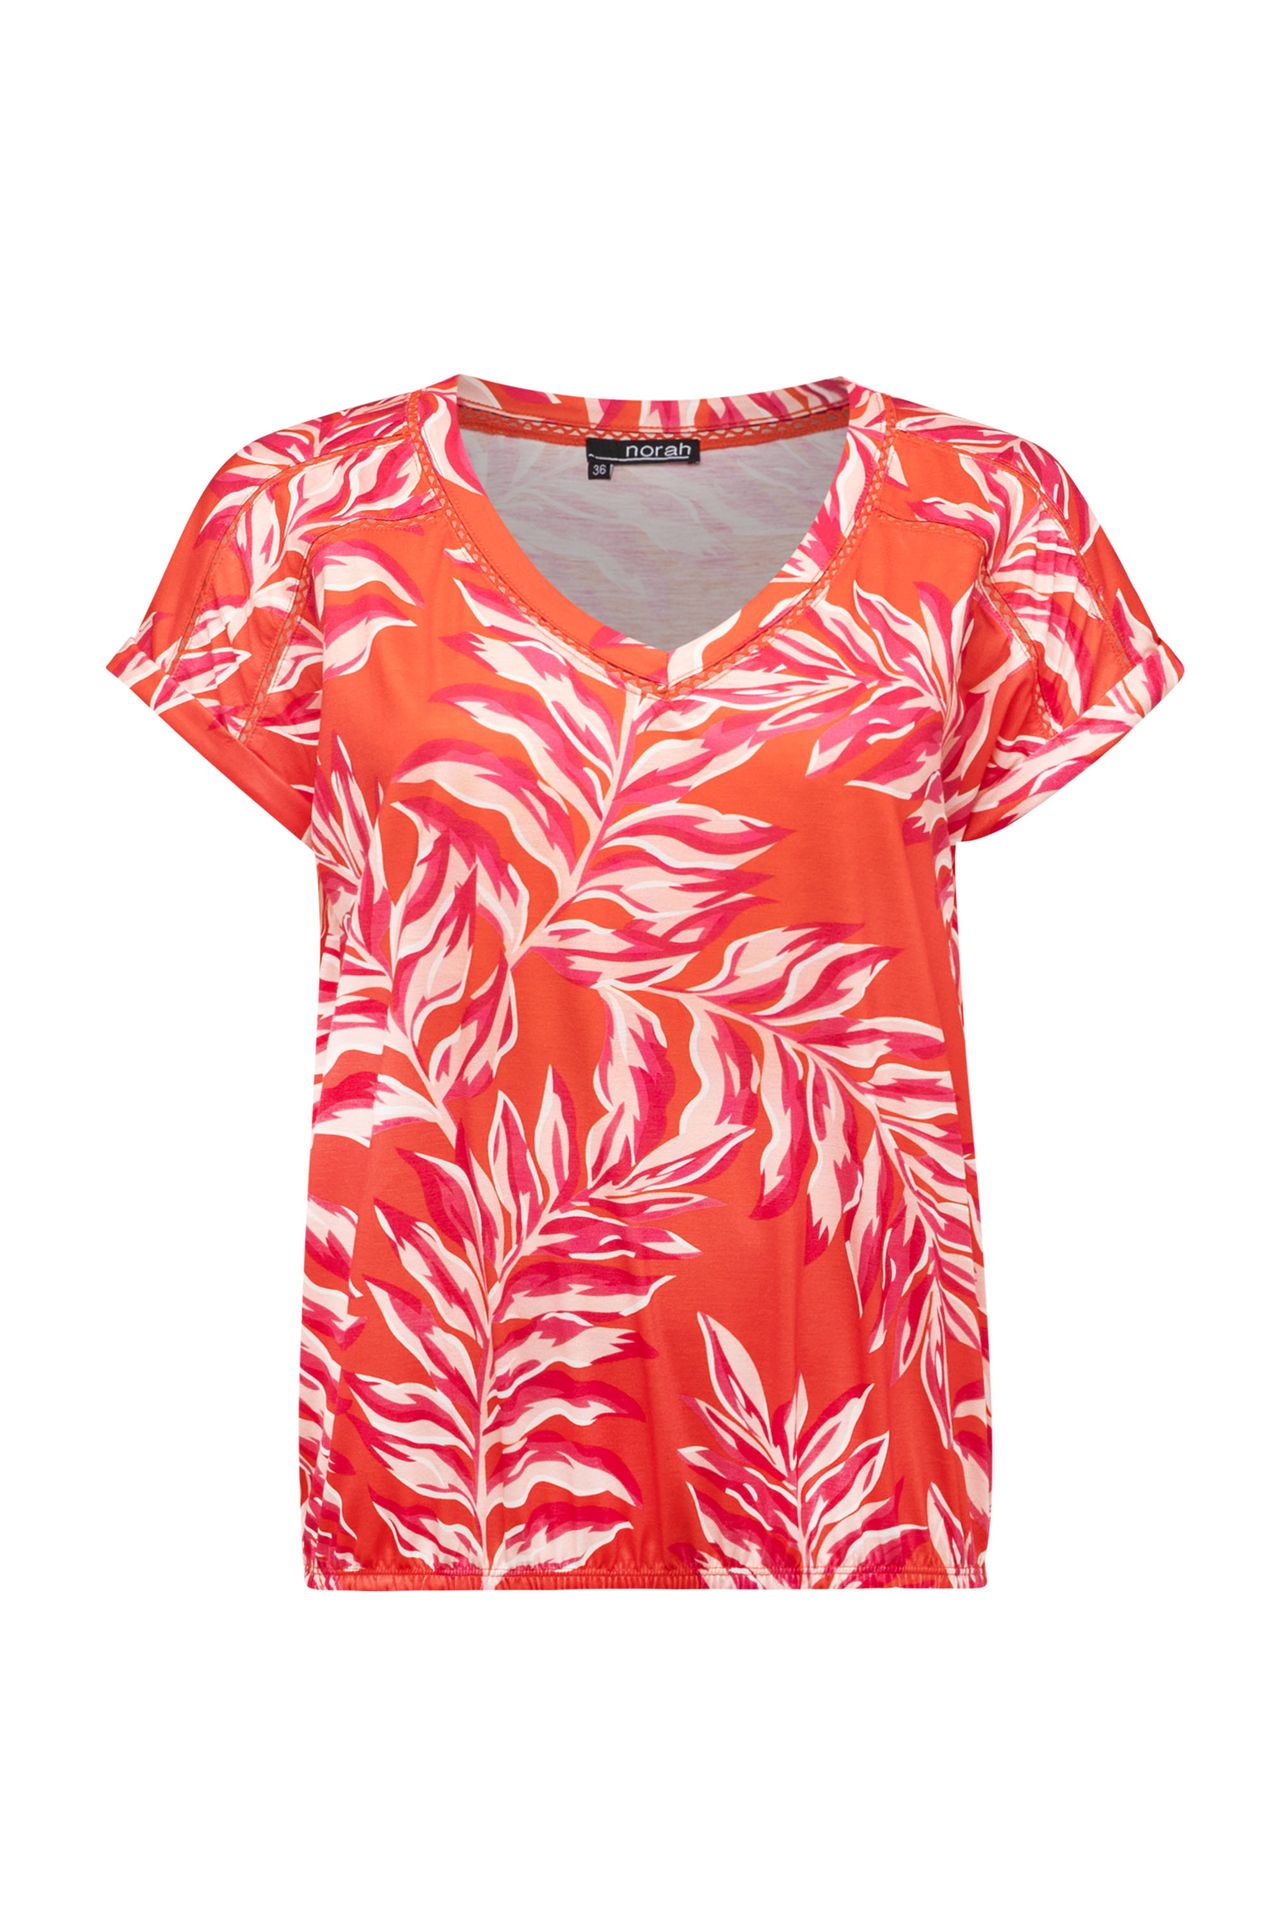 Norah Oranje shirt orange/pink 213793-739